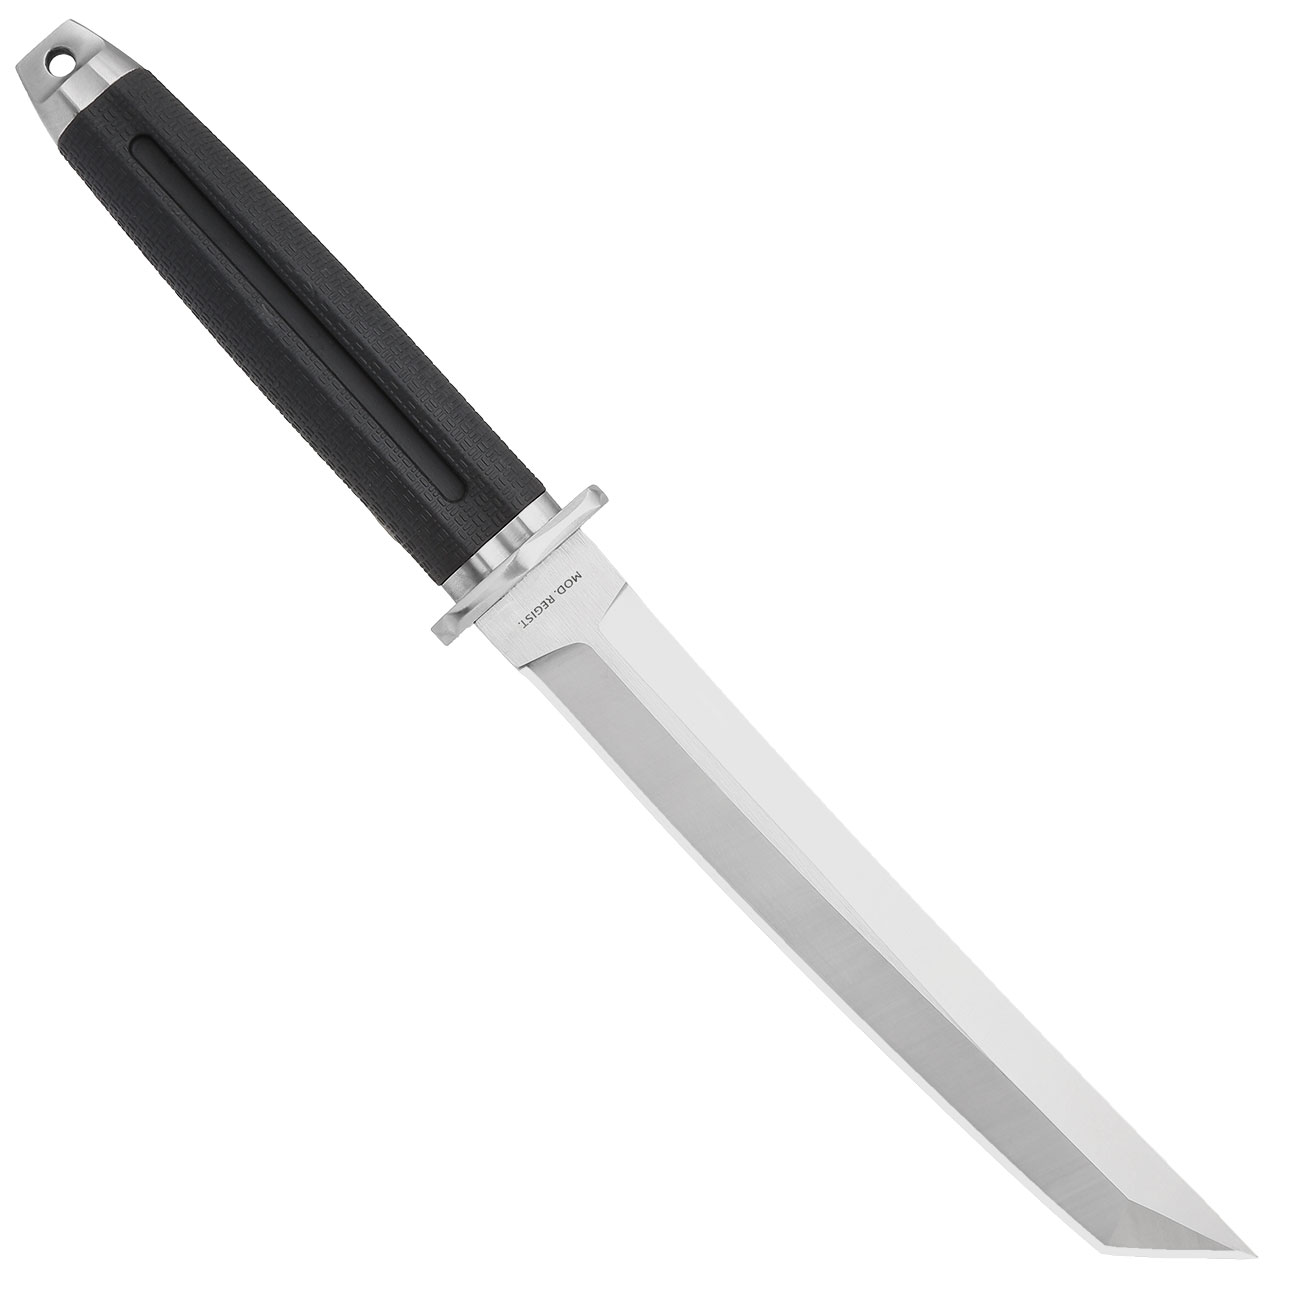 Tokisu Taktisches Messer Akechi Tantoklinge silber/schwarz inkl. Grtelscheide und Box Bild 1